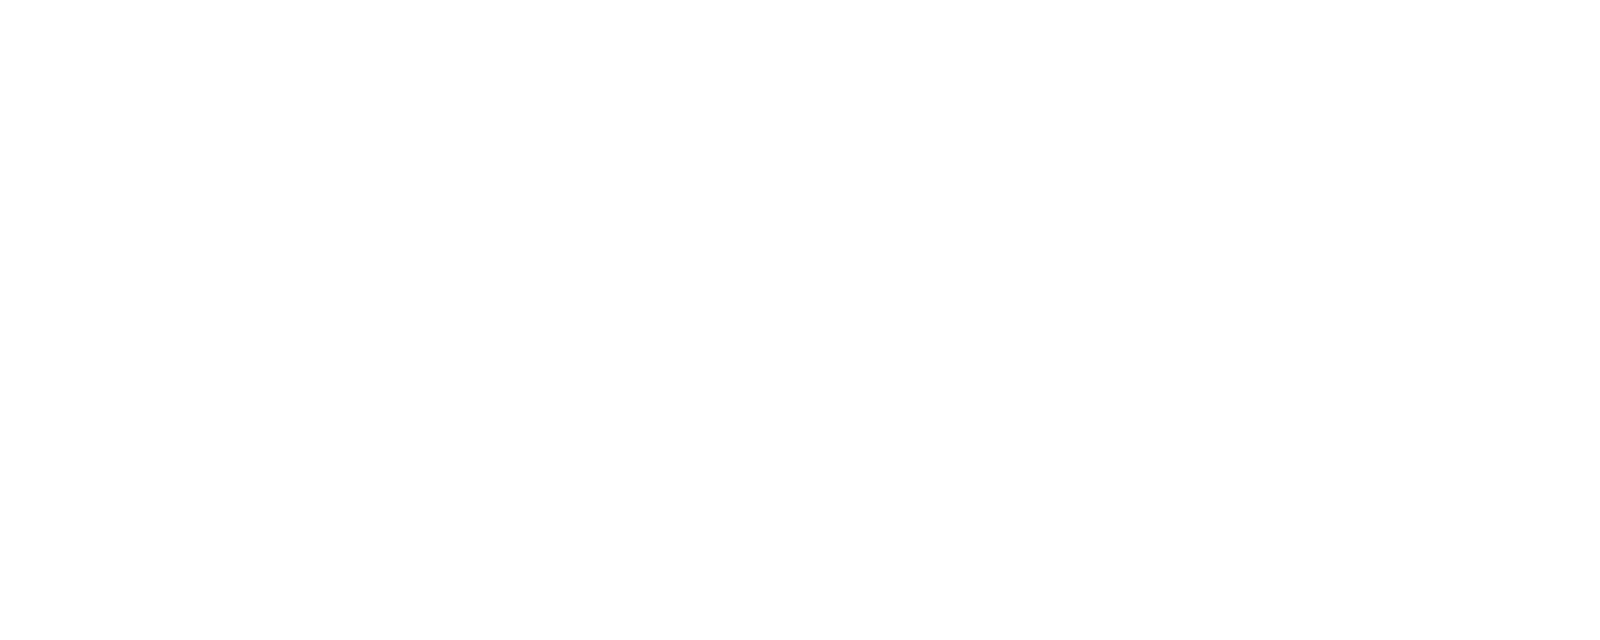 Mr tech devil